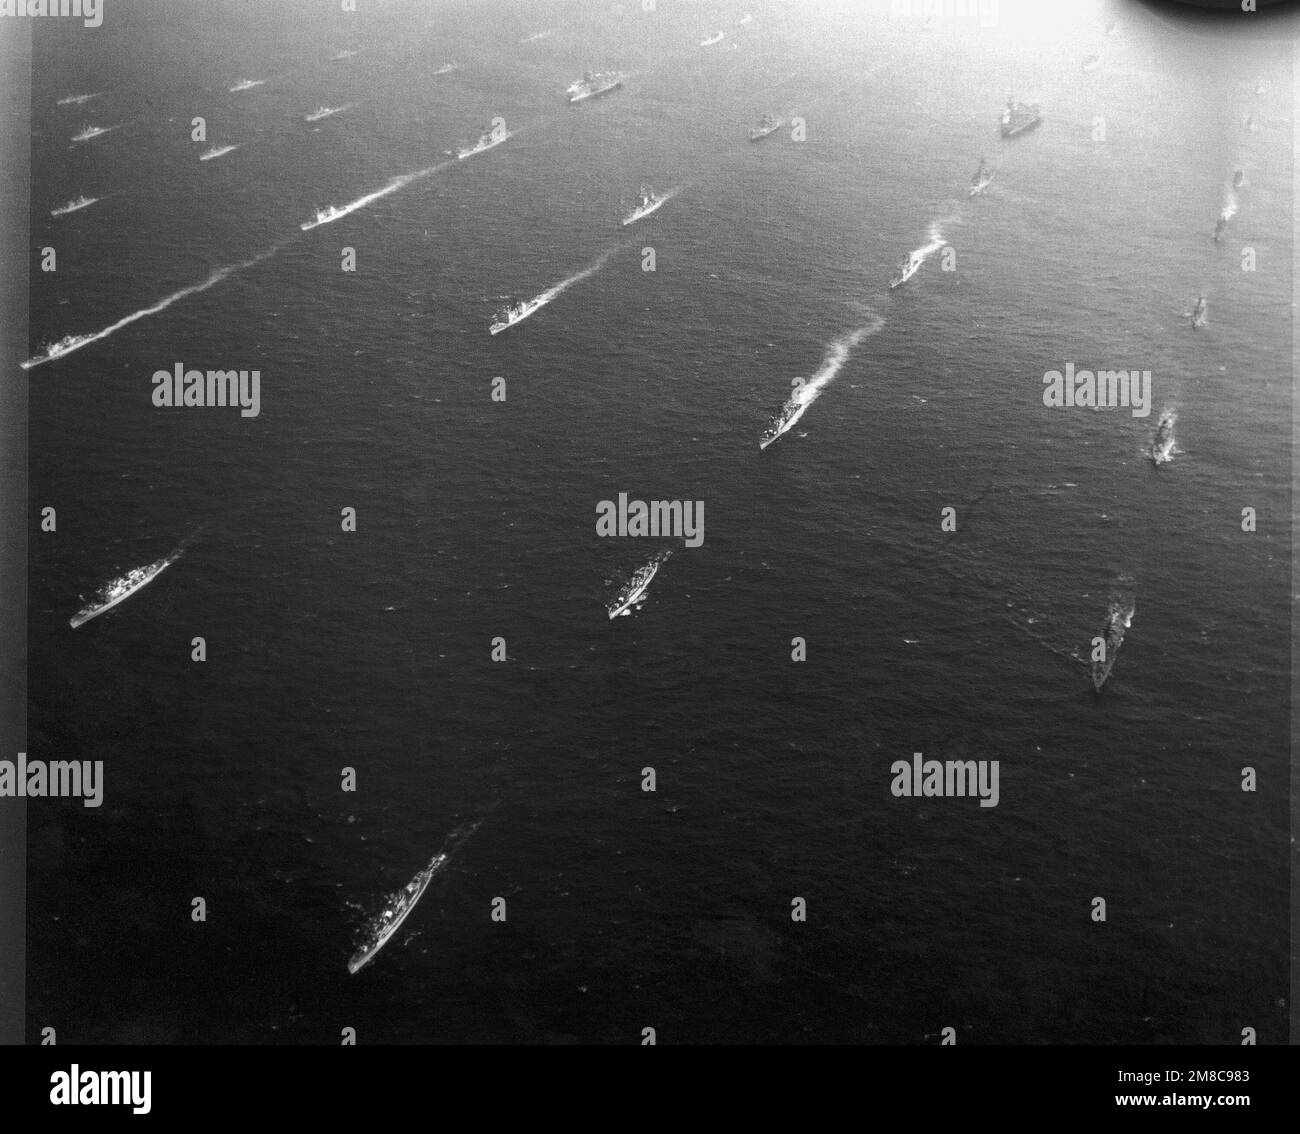 Copia immagine di una vista aerea della US Navy (USN) e delle navi alleate in corso di parata formazione durante Pacific Exercise (PACEX) '89. Questa formazione mostra alcune delle navi che partecipano al più grande raduno di forze navali alleate dalla seconda guerra mondiale (seconda guerra mondiale). Paese: Oceano Pacifico (POC) Foto Stock